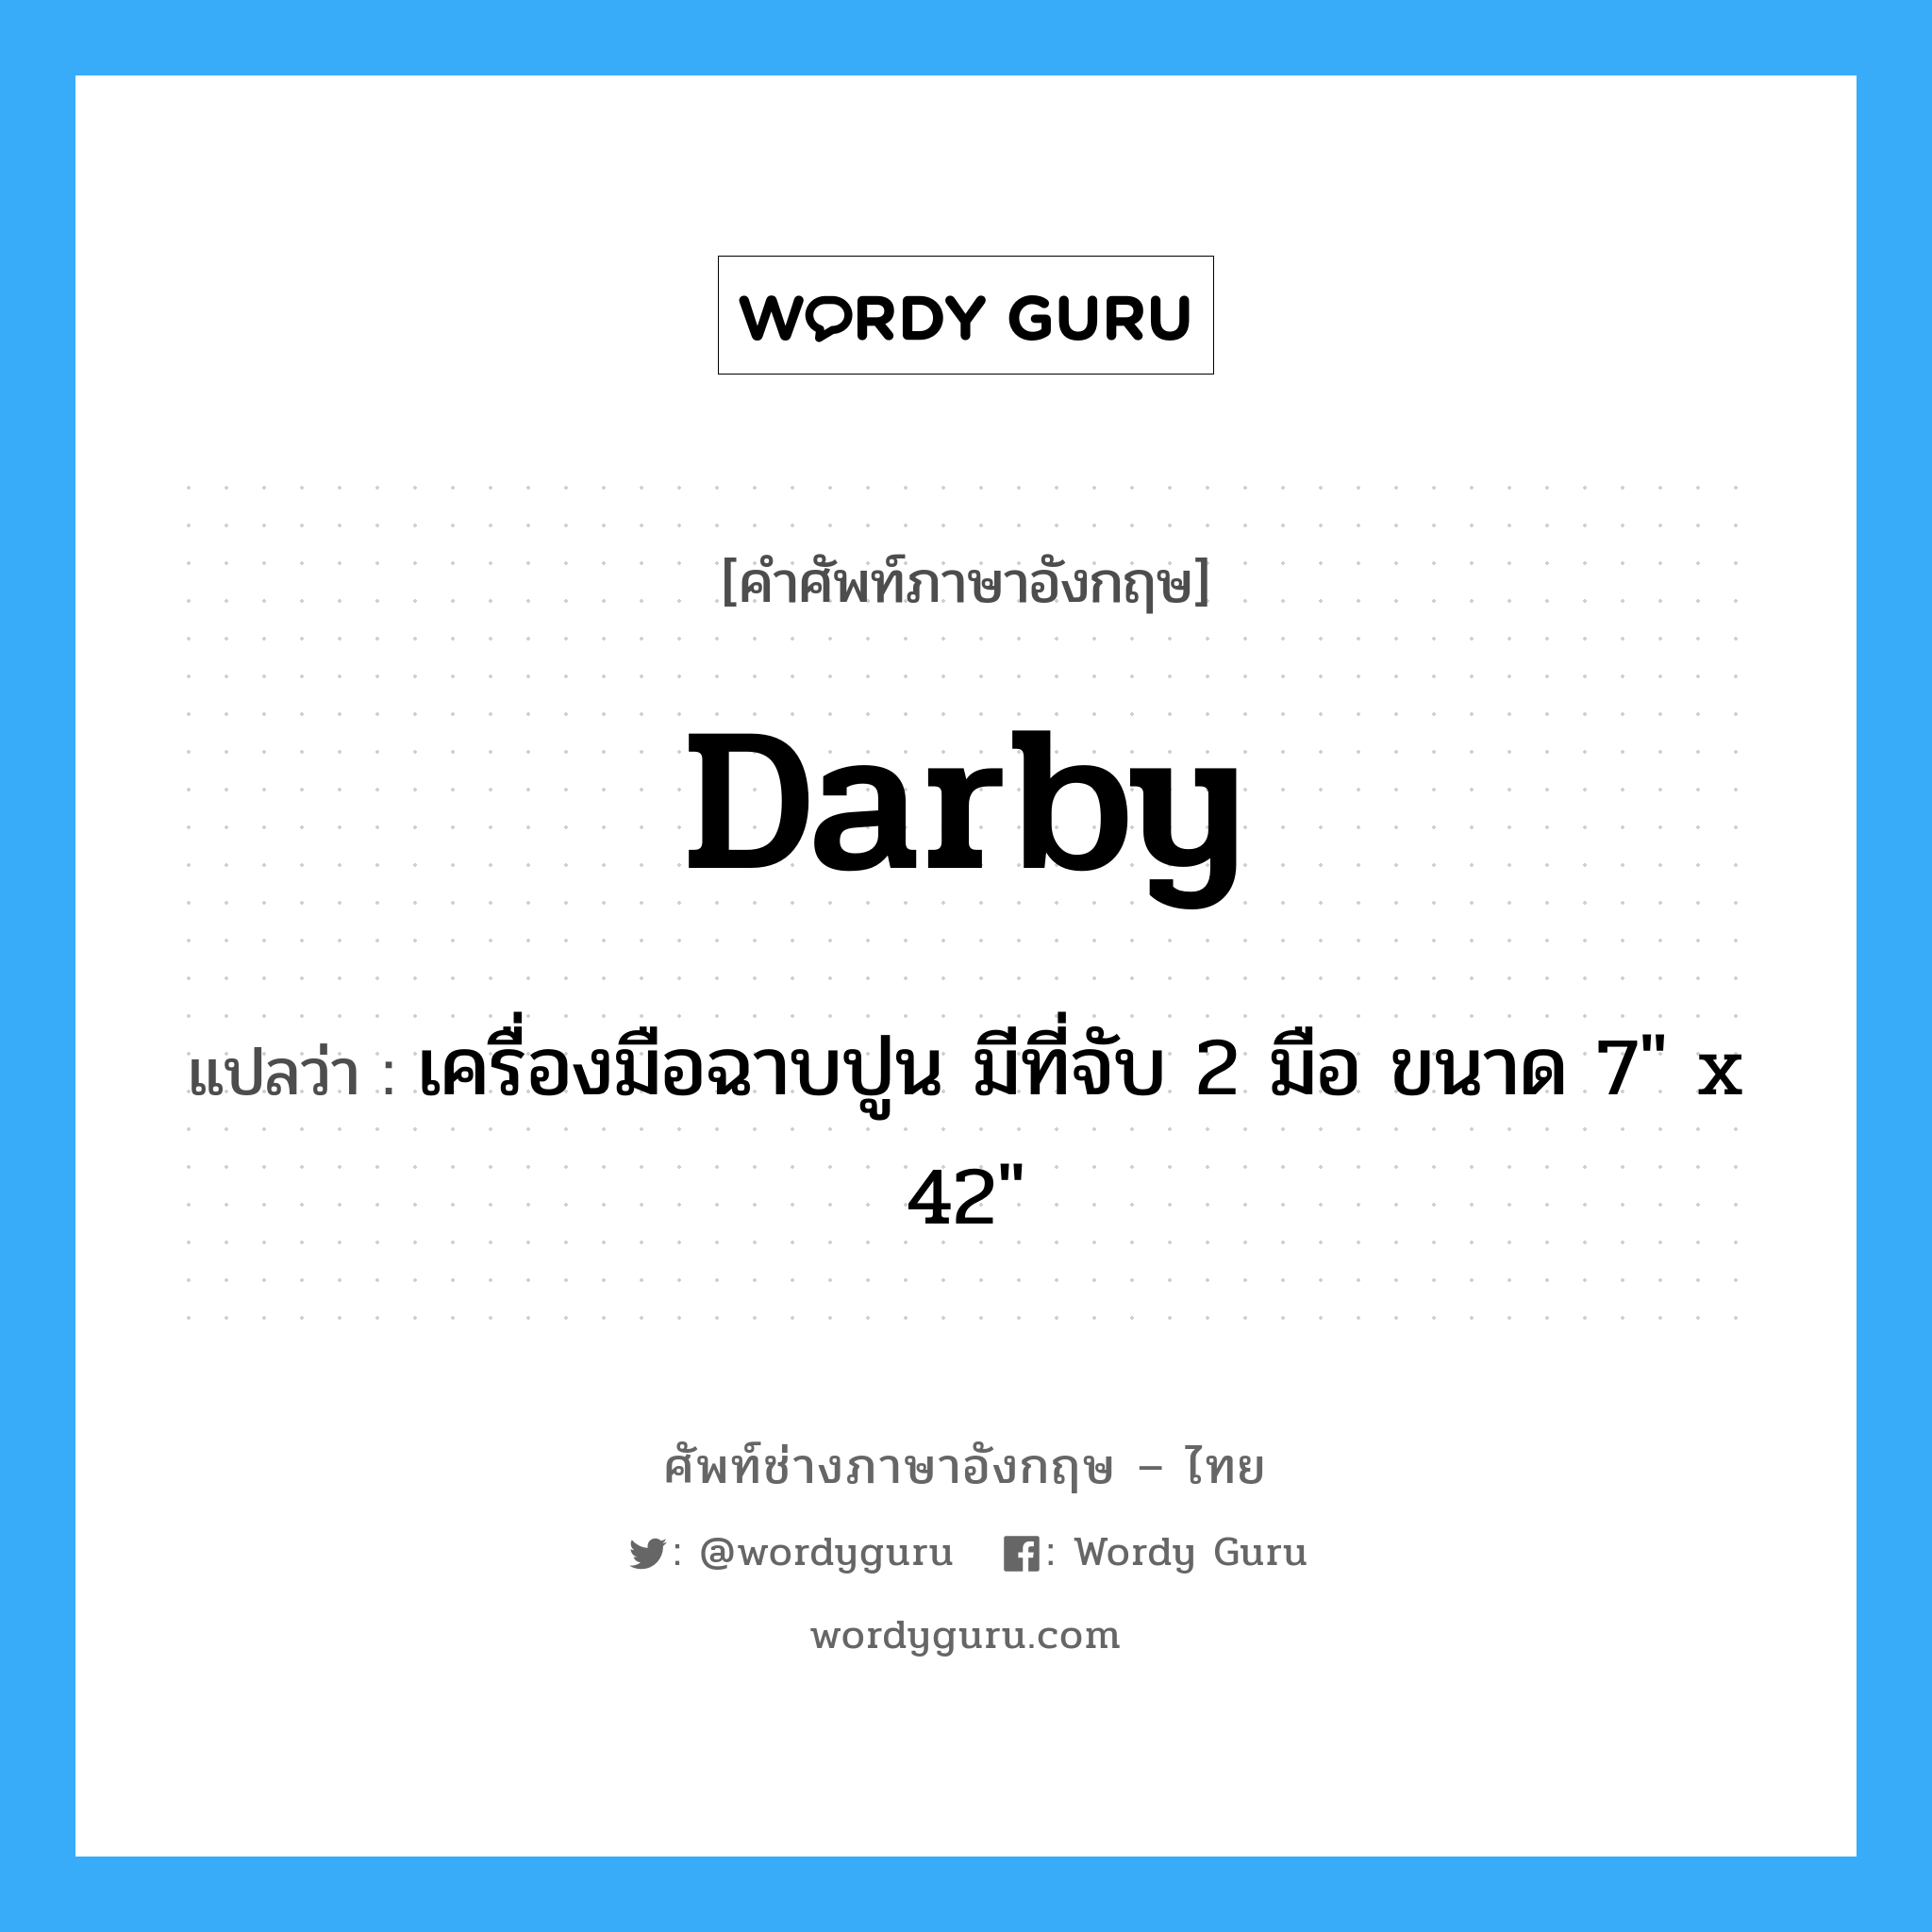 darby แปลว่า?, คำศัพท์ช่างภาษาอังกฤษ - ไทย darby คำศัพท์ภาษาอังกฤษ darby แปลว่า เครื่องมือฉาบปูน มีที่จับ 2 มือ ขนาด 7" x 42"